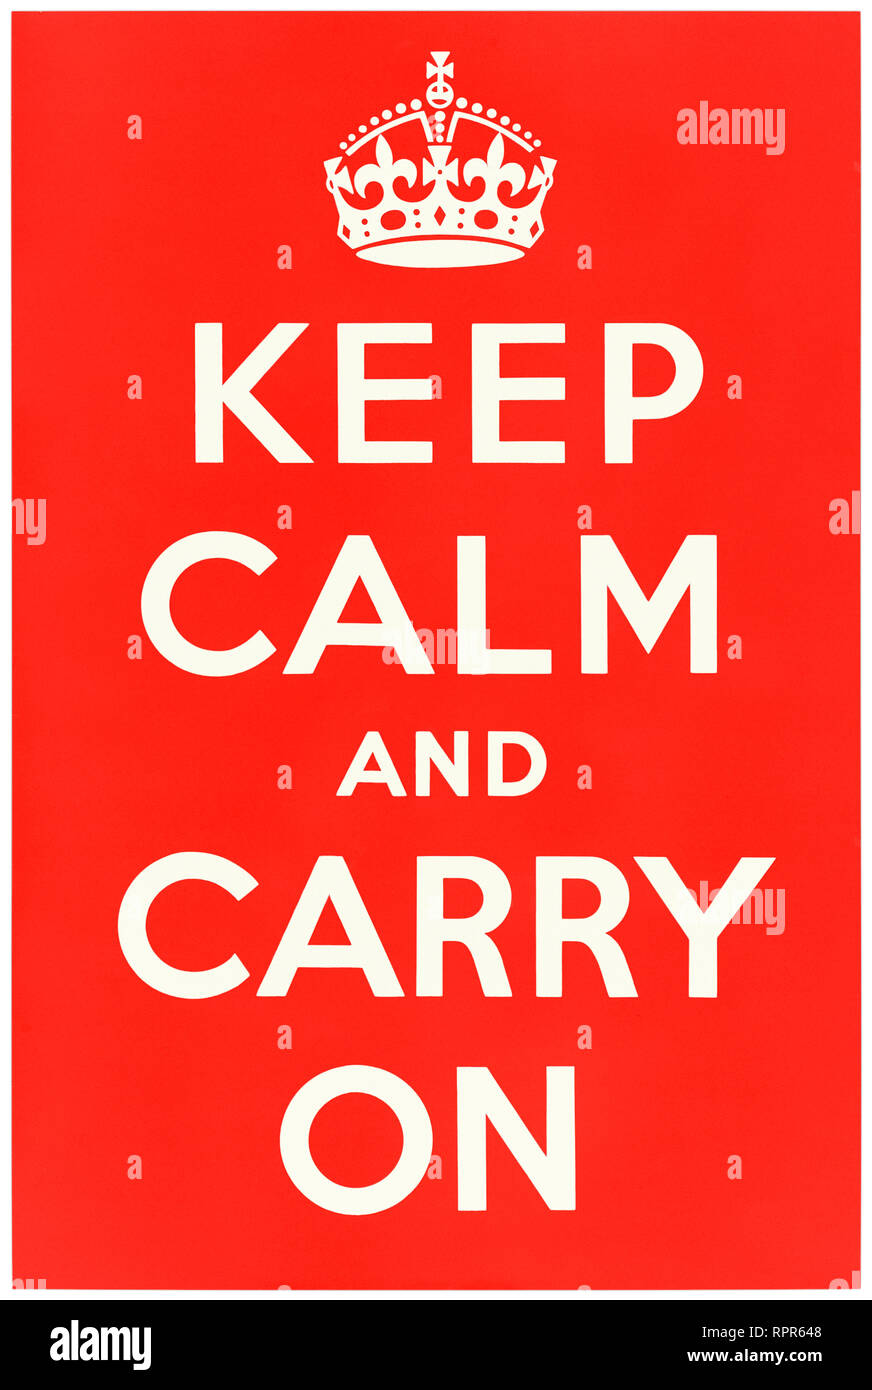 Keep calm and carry on (1939) affiche conçue par le ministère de l'information d'un ministère du gouvernement central du Royaume-Uni responsable de la publicité et de la propagande. Voir plus d'informations ci-dessous. Banque D'Images